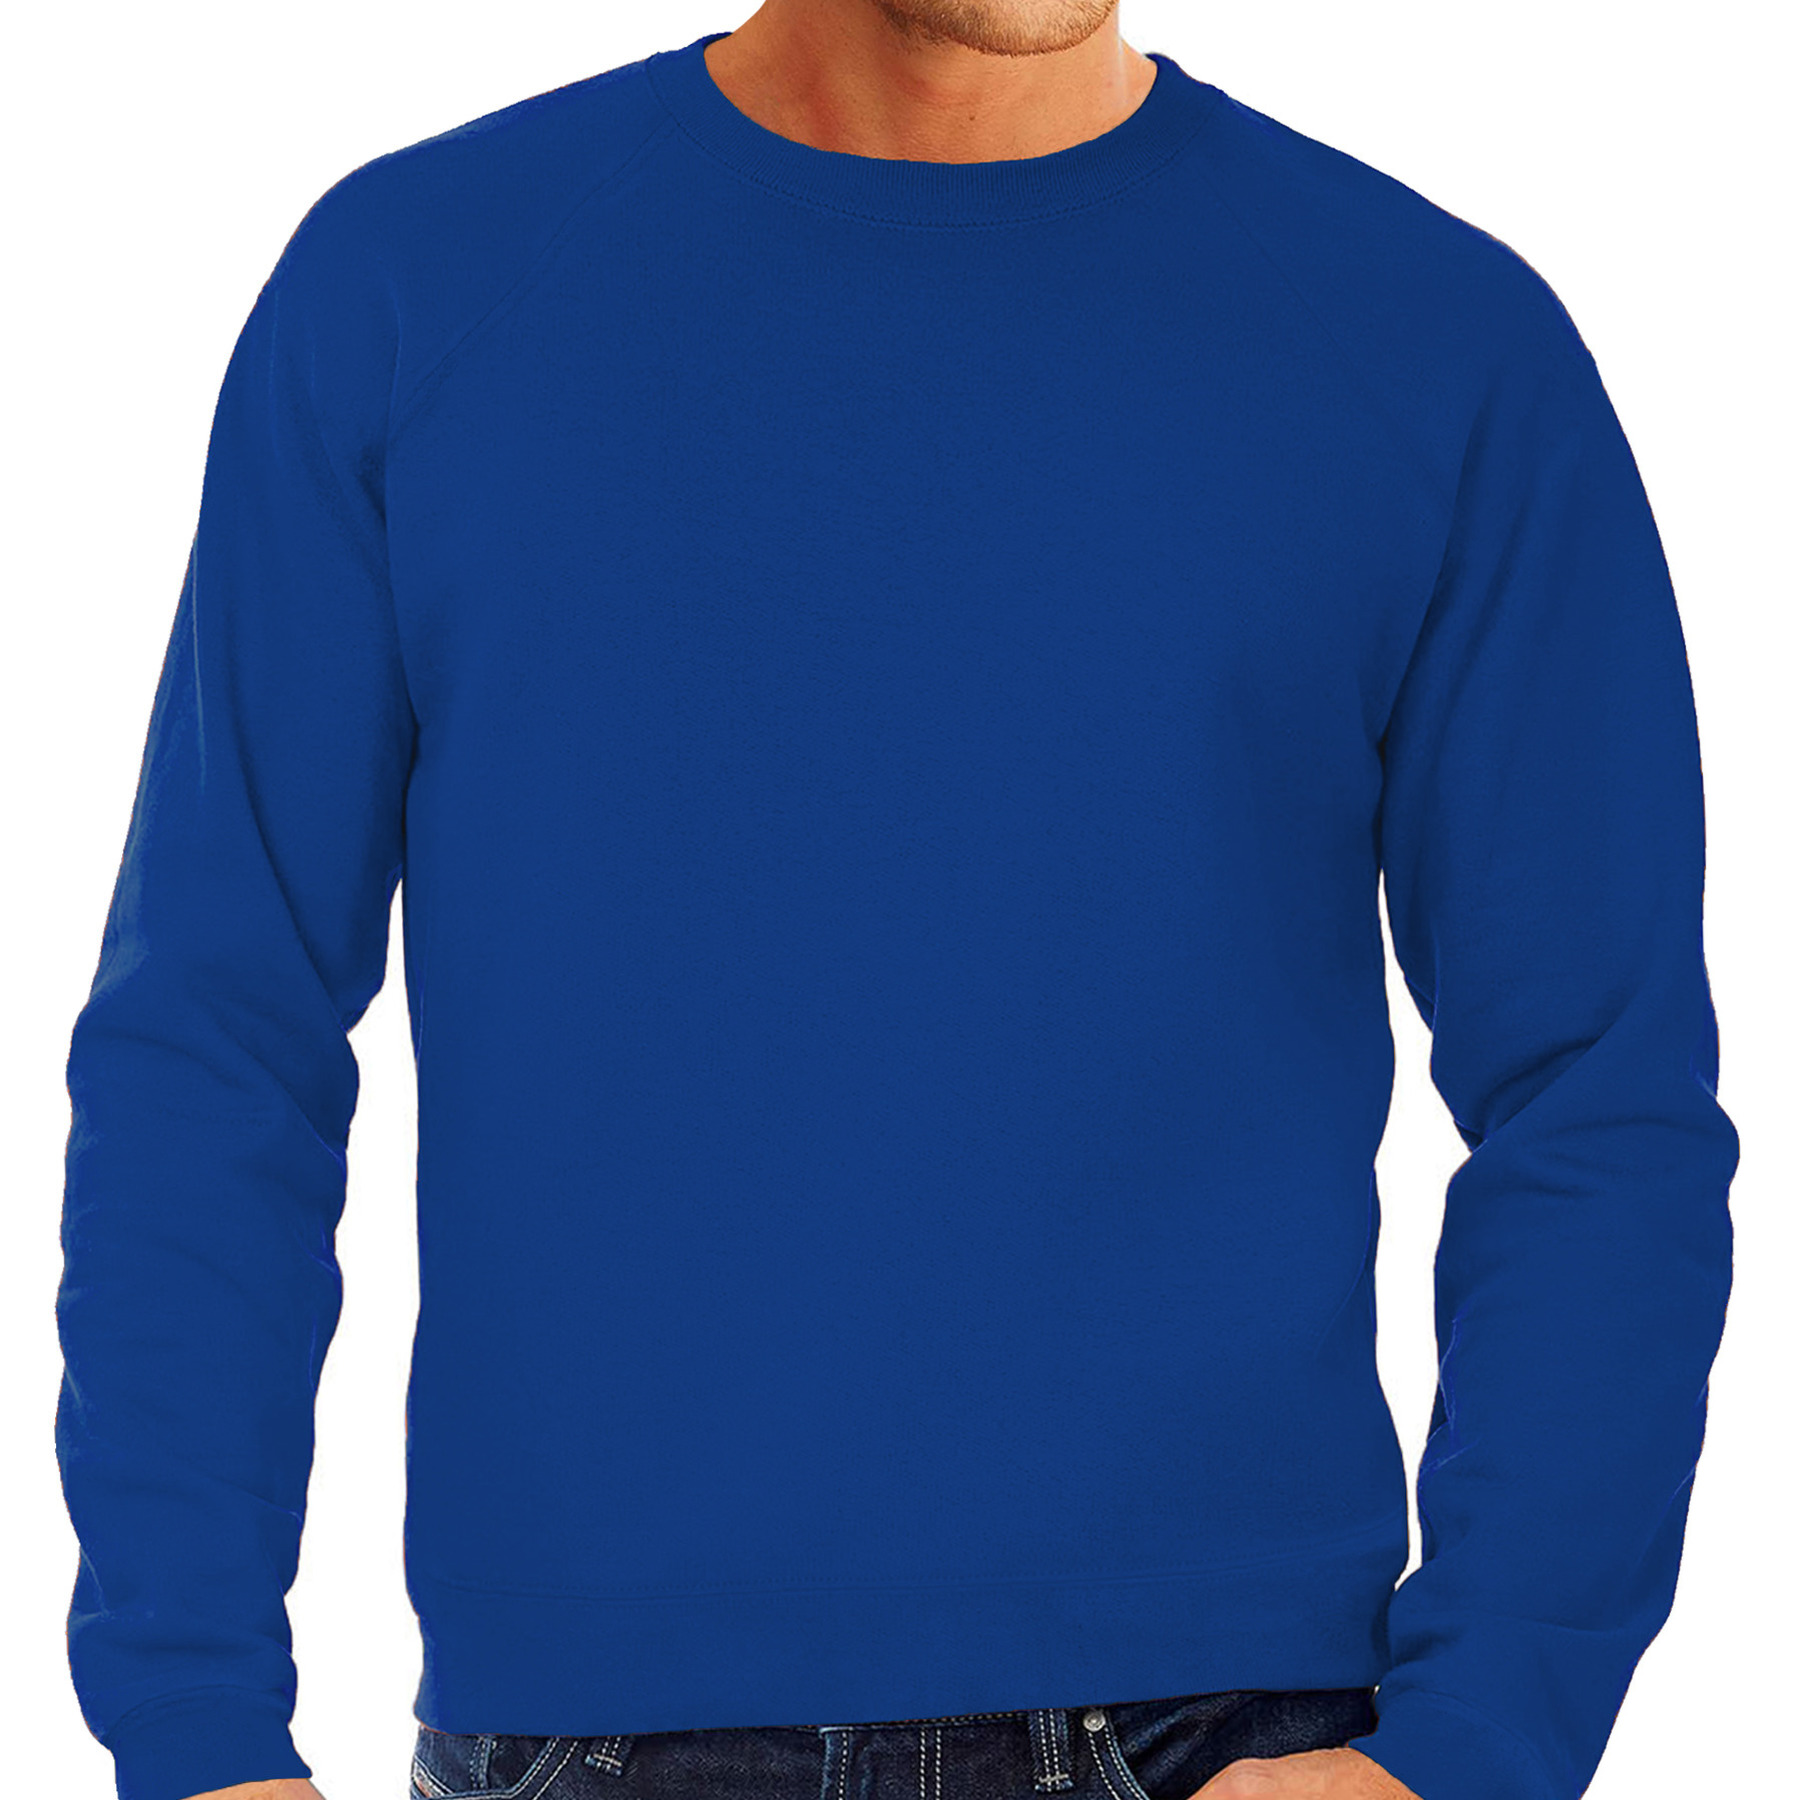 Sweater / sweatshirt trui blauw met ronde hals en raglan mouwen voor mannen